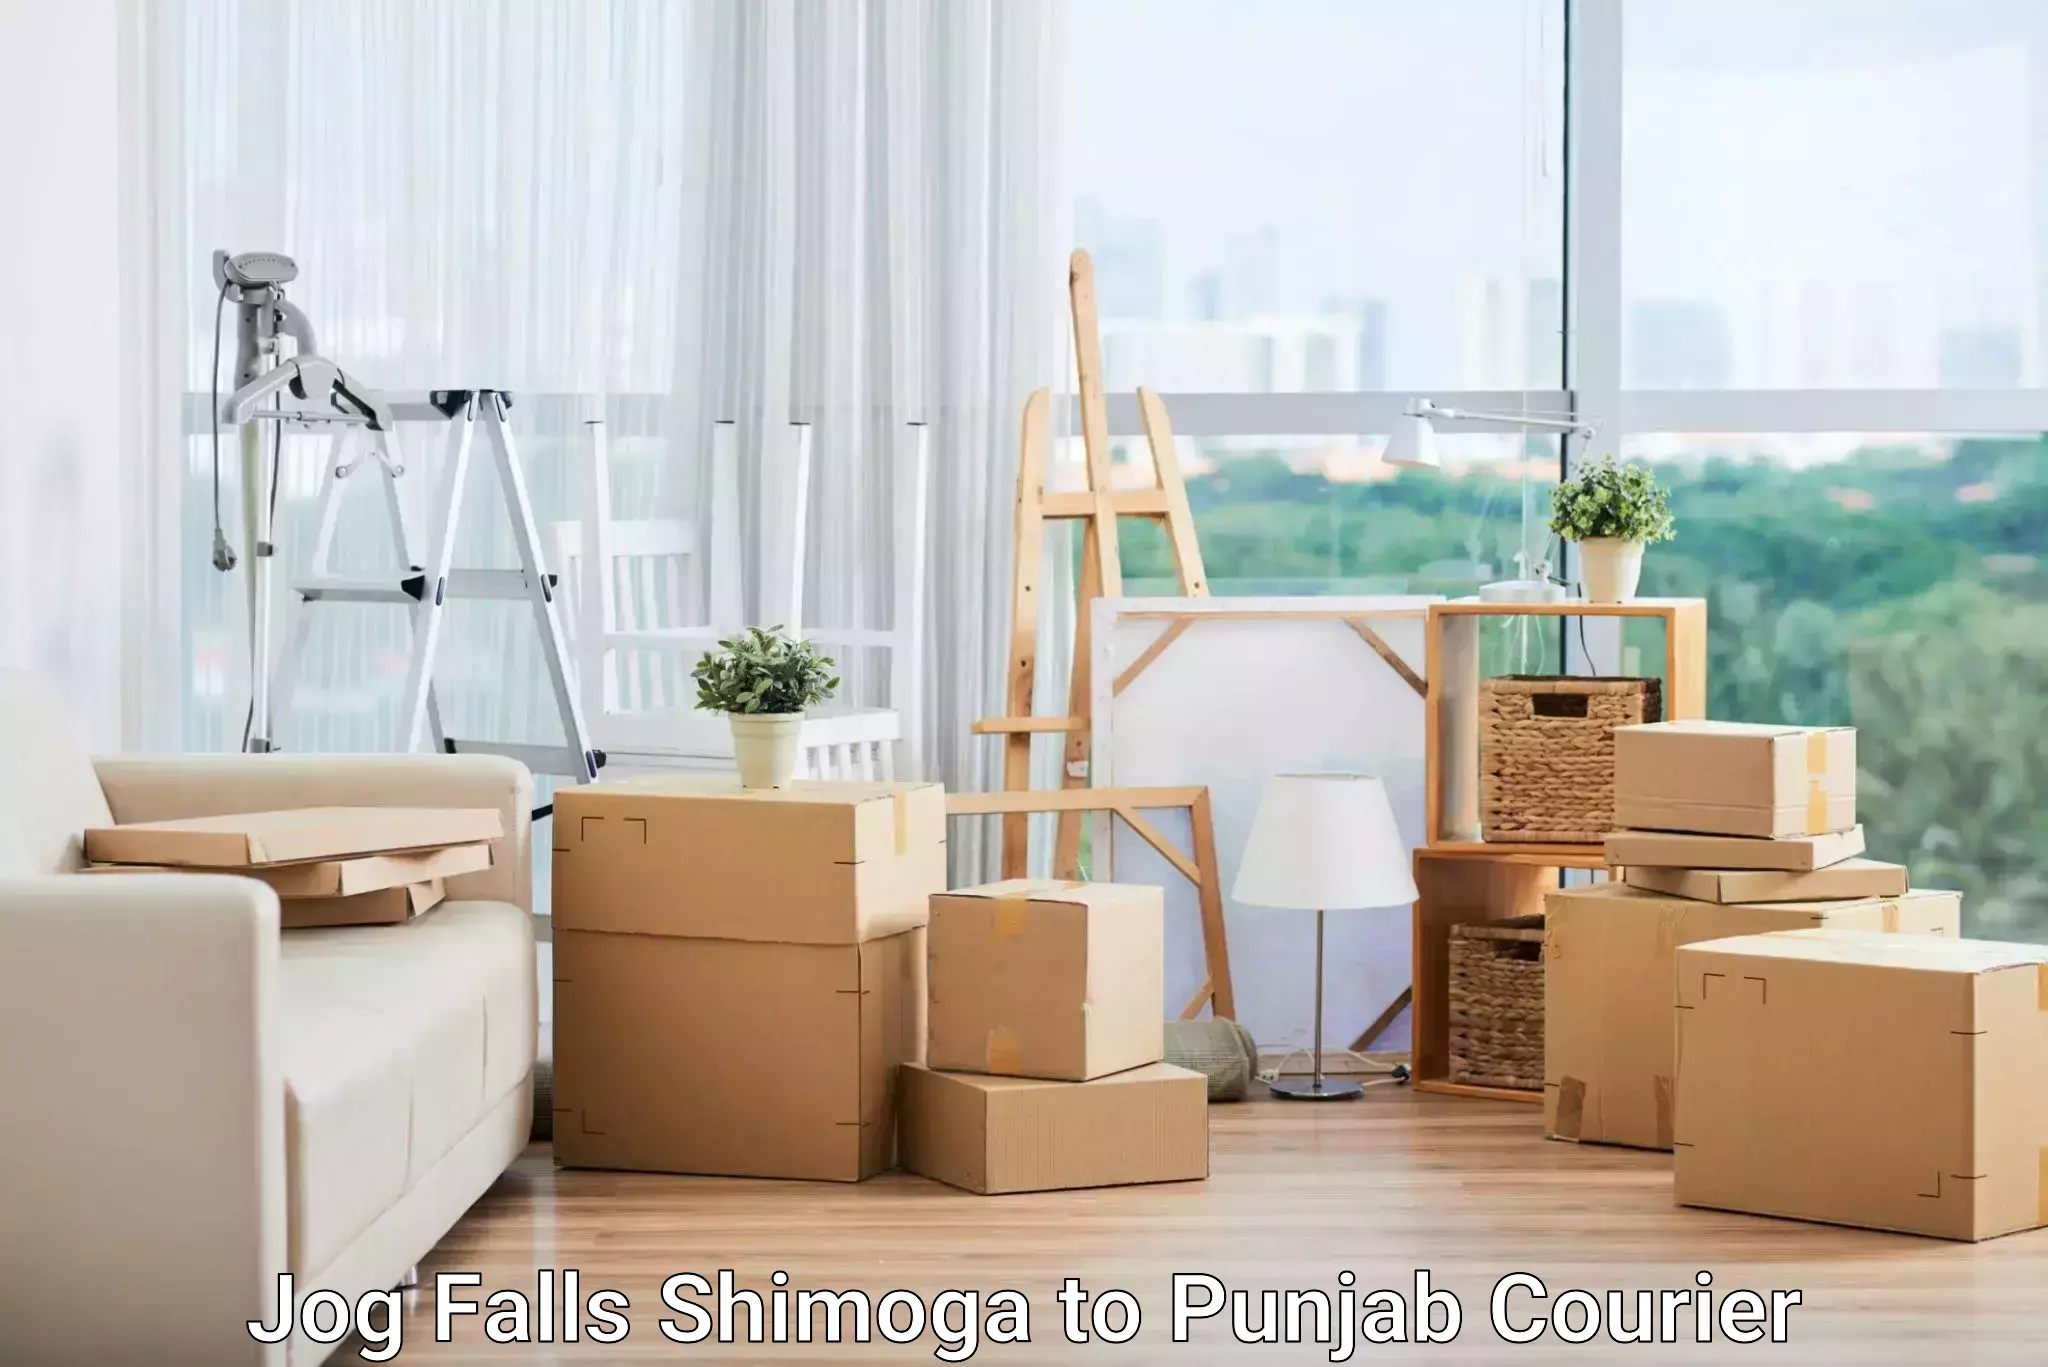 Nationwide parcel services Jog Falls Shimoga to Punjab